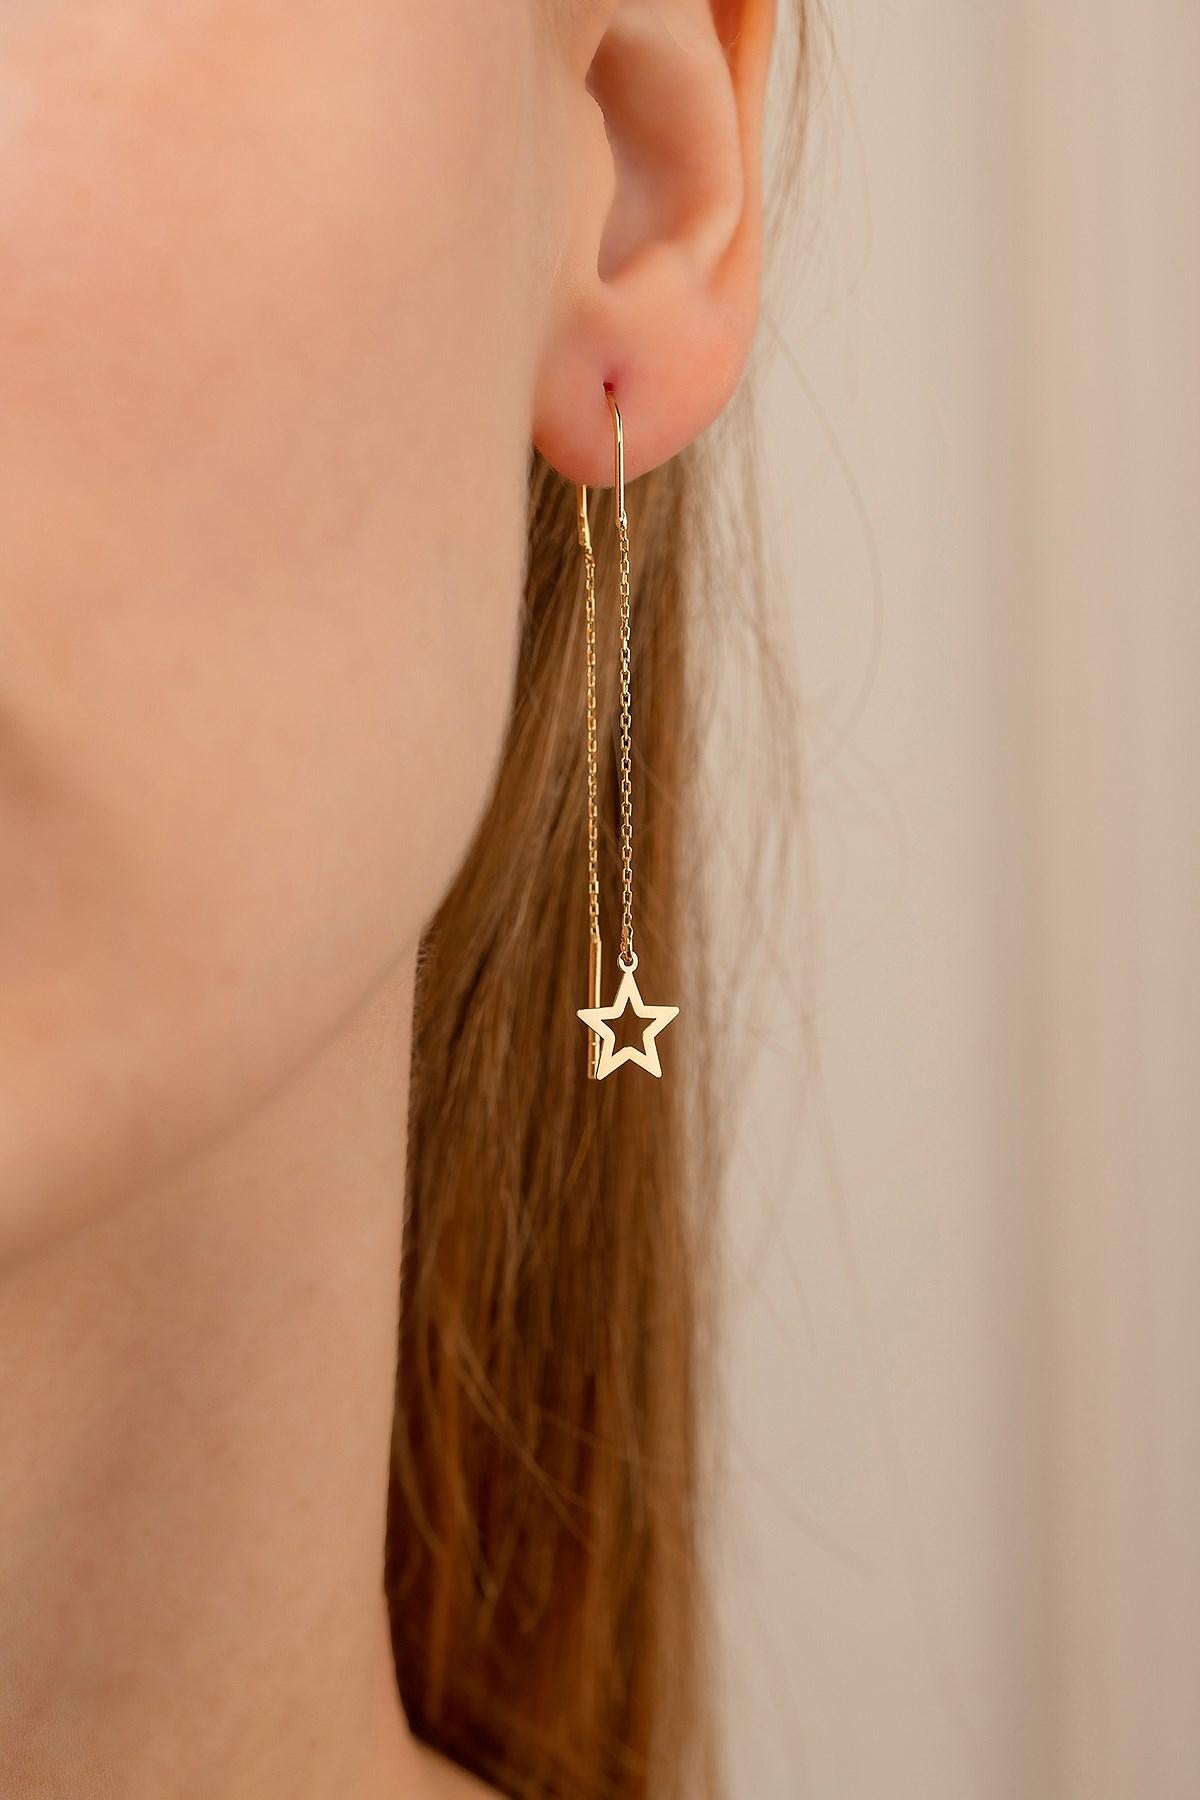 Starburst Threader-Ohrringe aus 14k Gold. 
14 k Gelbgold Threader Stern-Ohrringe. North Star U-Form-Ohreinfädler.

Metall: 14k Gold
Gewicht: 1.1 g.
Ohrringe Größe: 44 mm Länge und Sterndurchmesser 9 mm.

Auktion